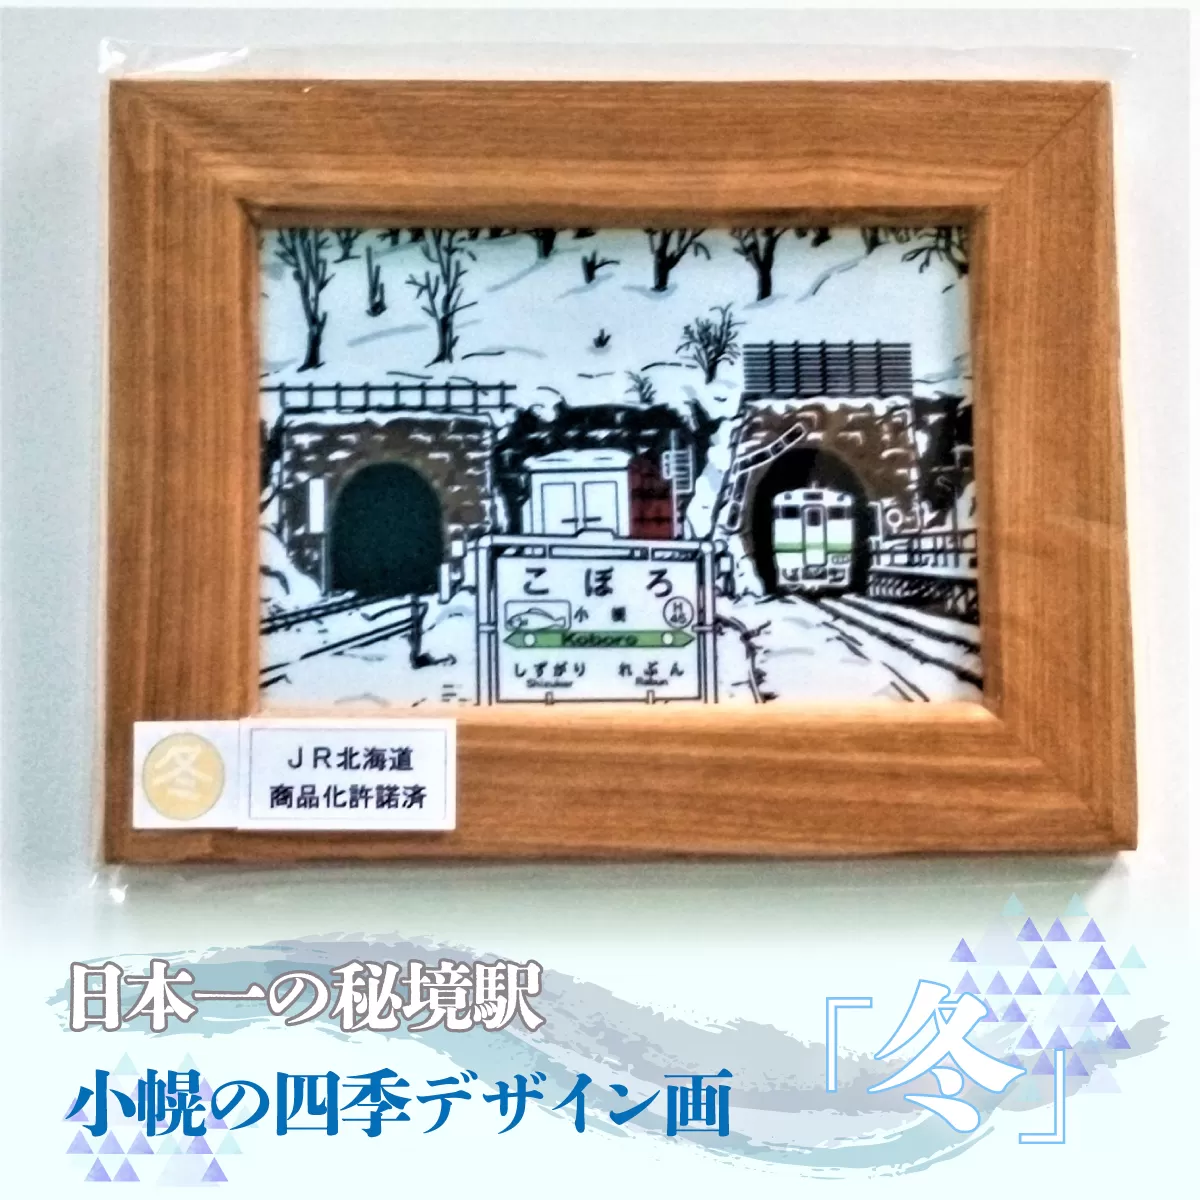 小幌の四季デザイン画「冬」 TYUN004